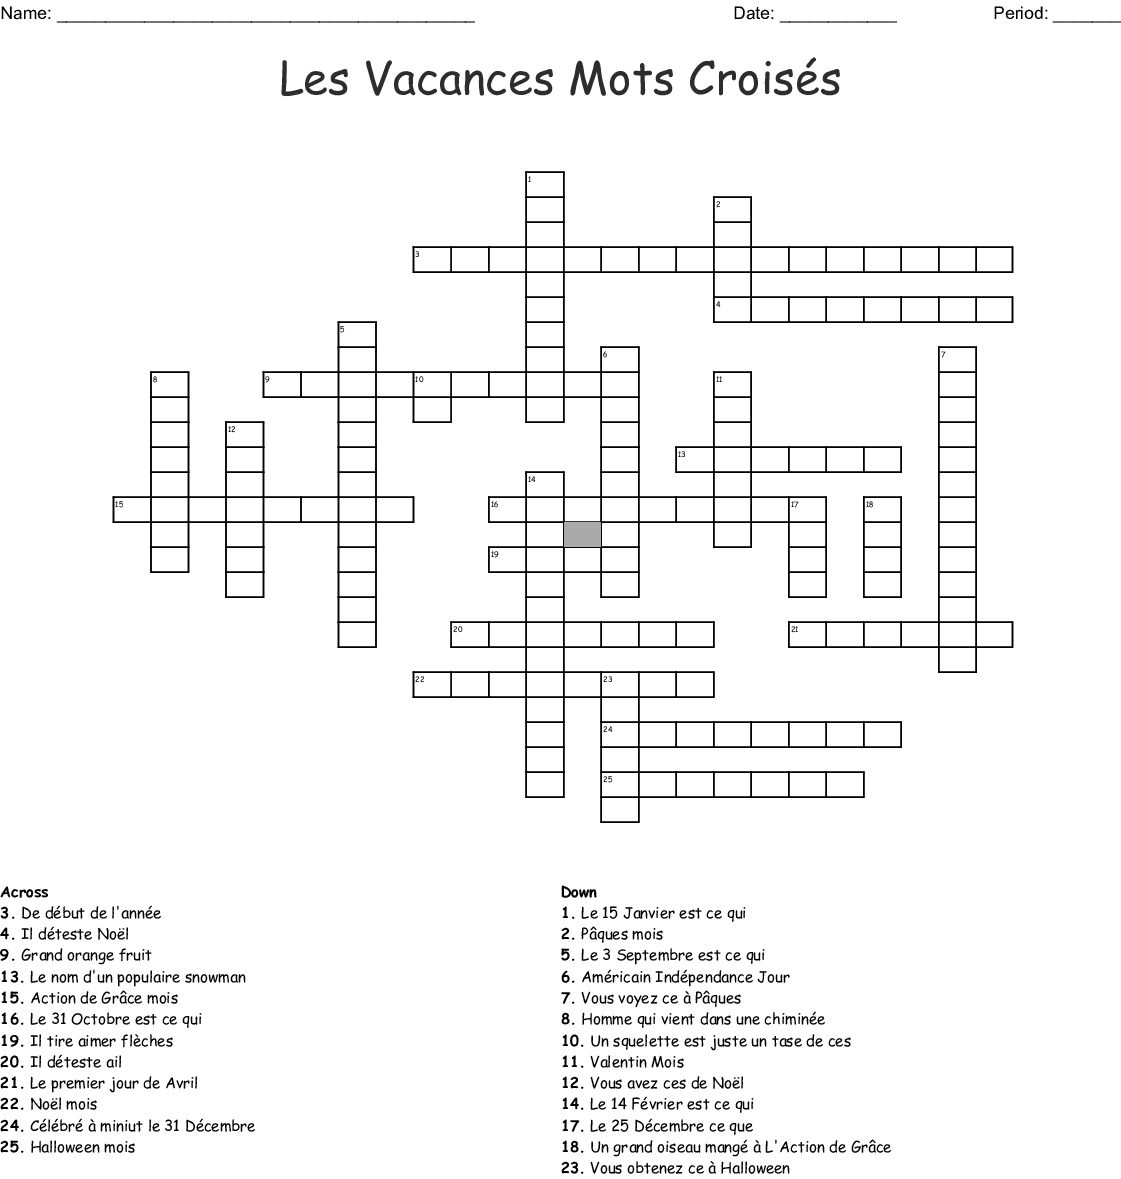 Les Vacances Mots Croisés Crossword - Wordmint destiné Mots Croisés Noel